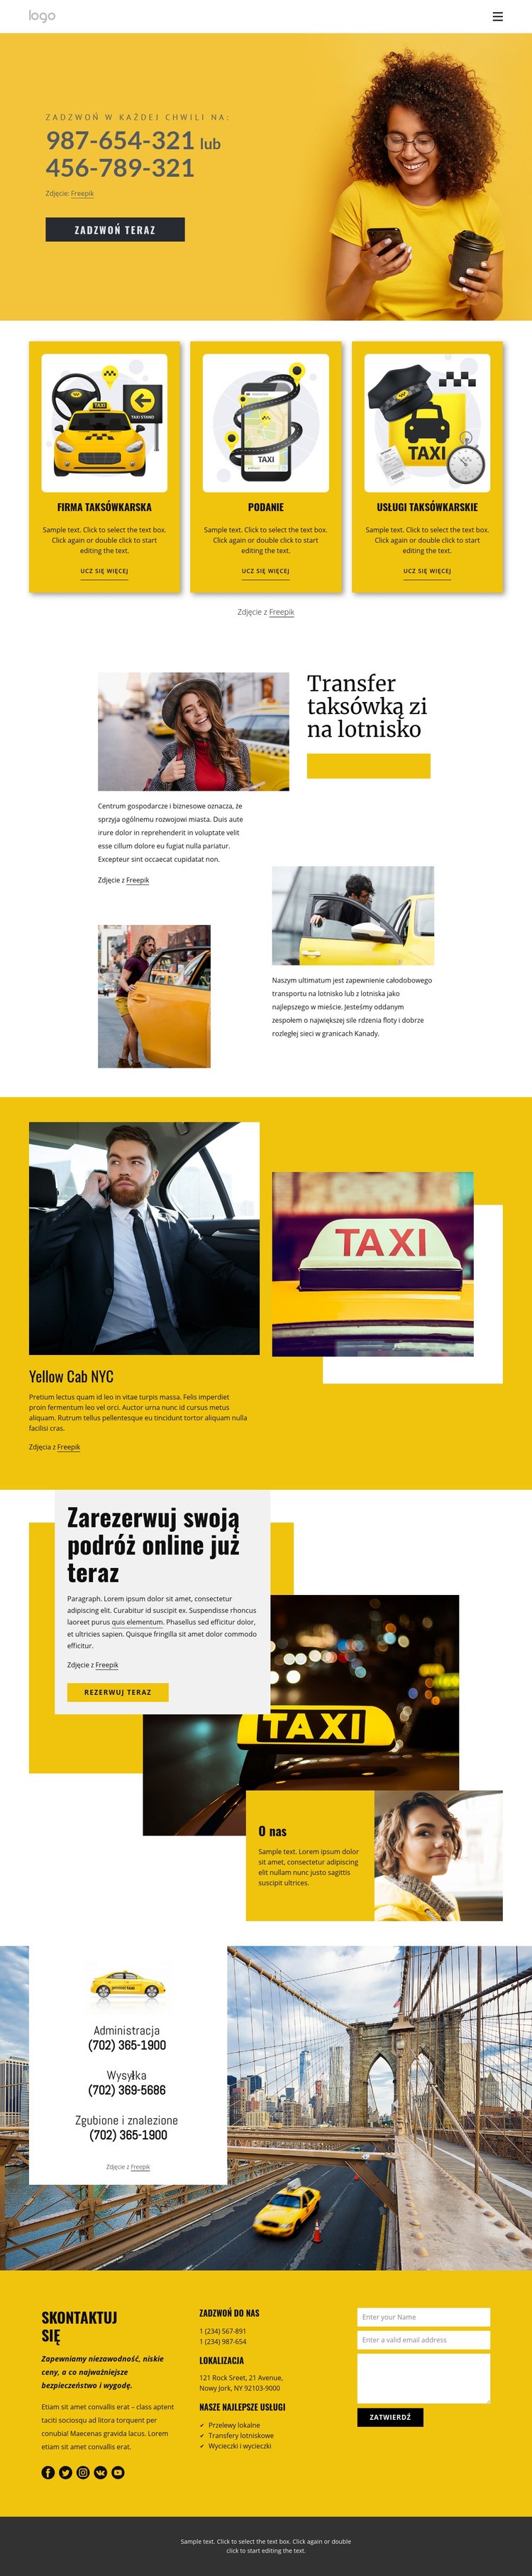 Jakość usług taksówkowych Szablon